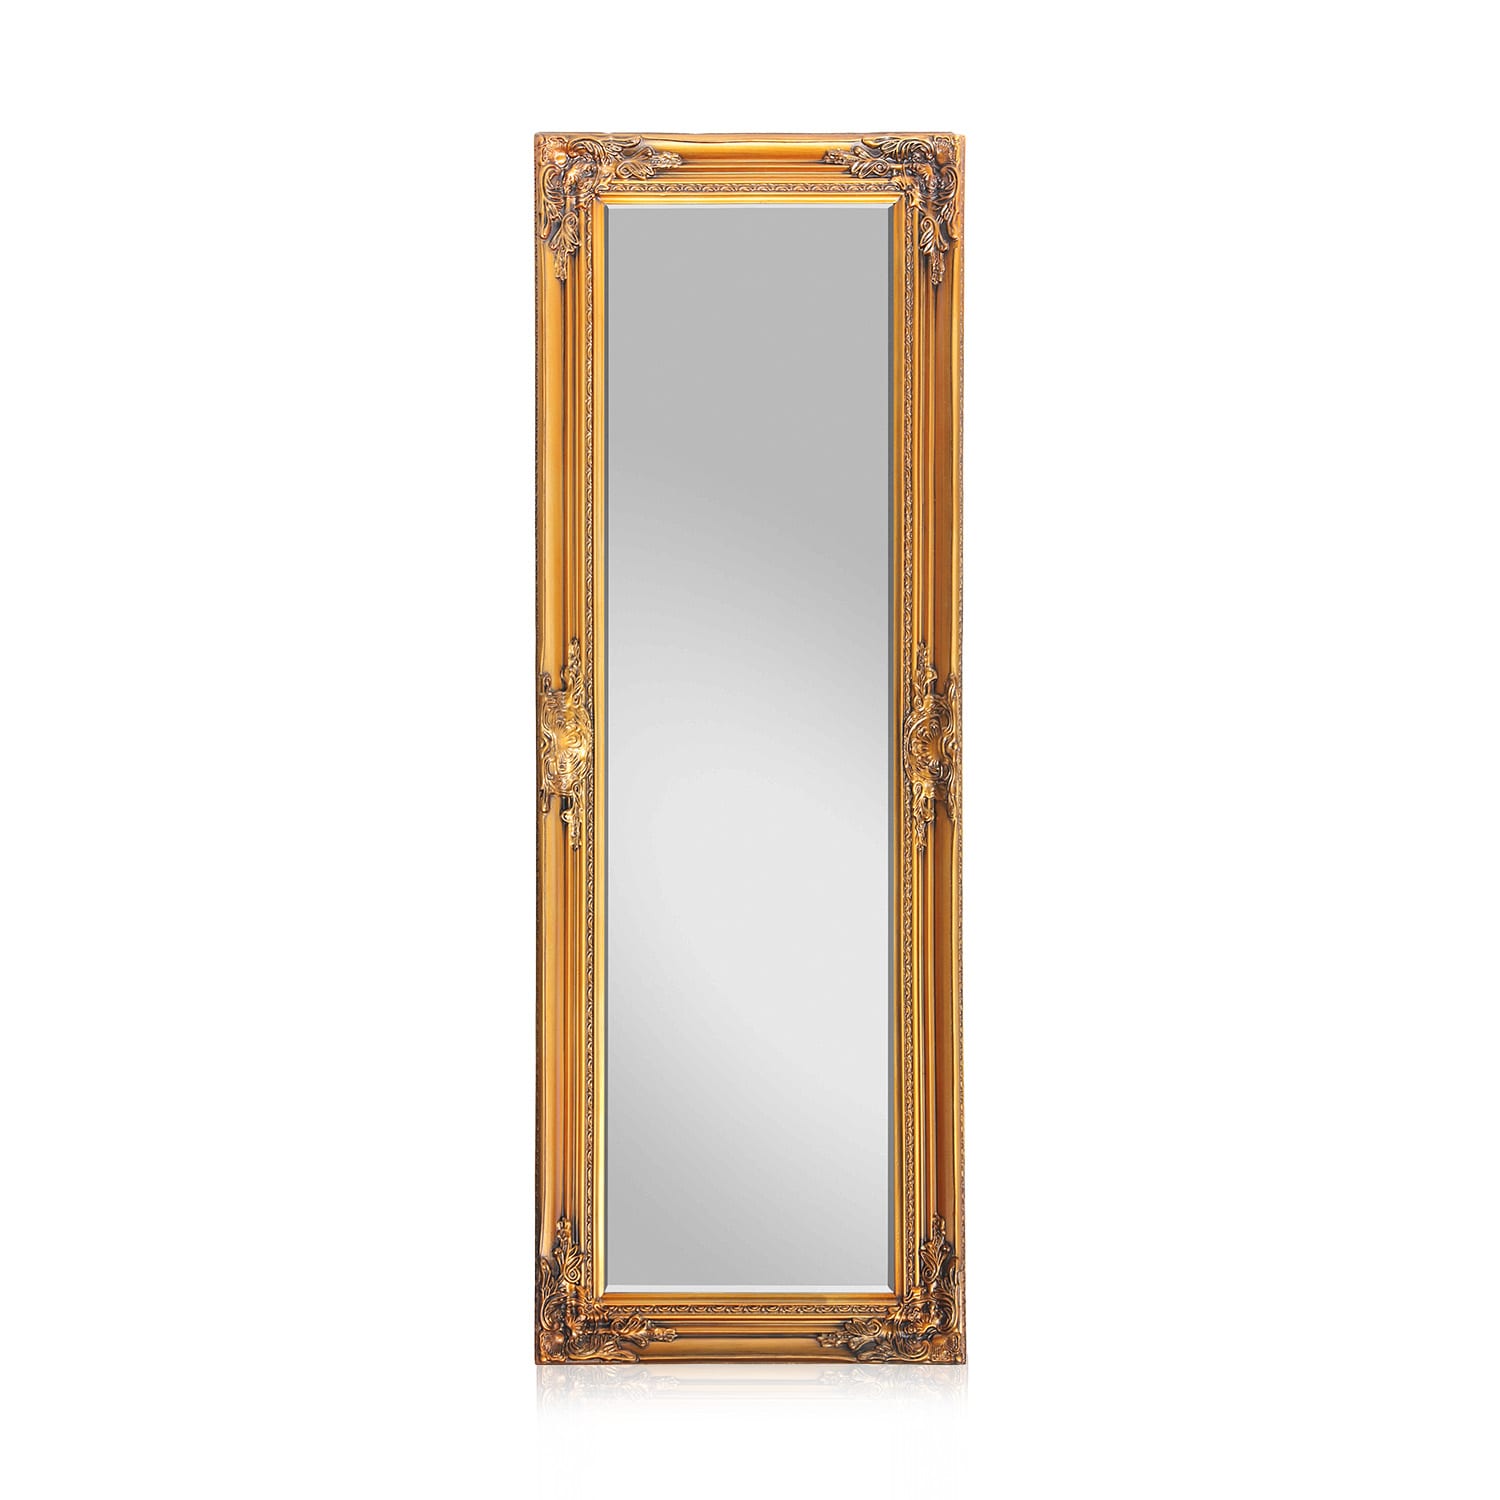 Levně Casa Chic Ashford, zrcadlo se stojanem, masivní dřevěný rám, obdélníkový tvar, 130 x 45 cm